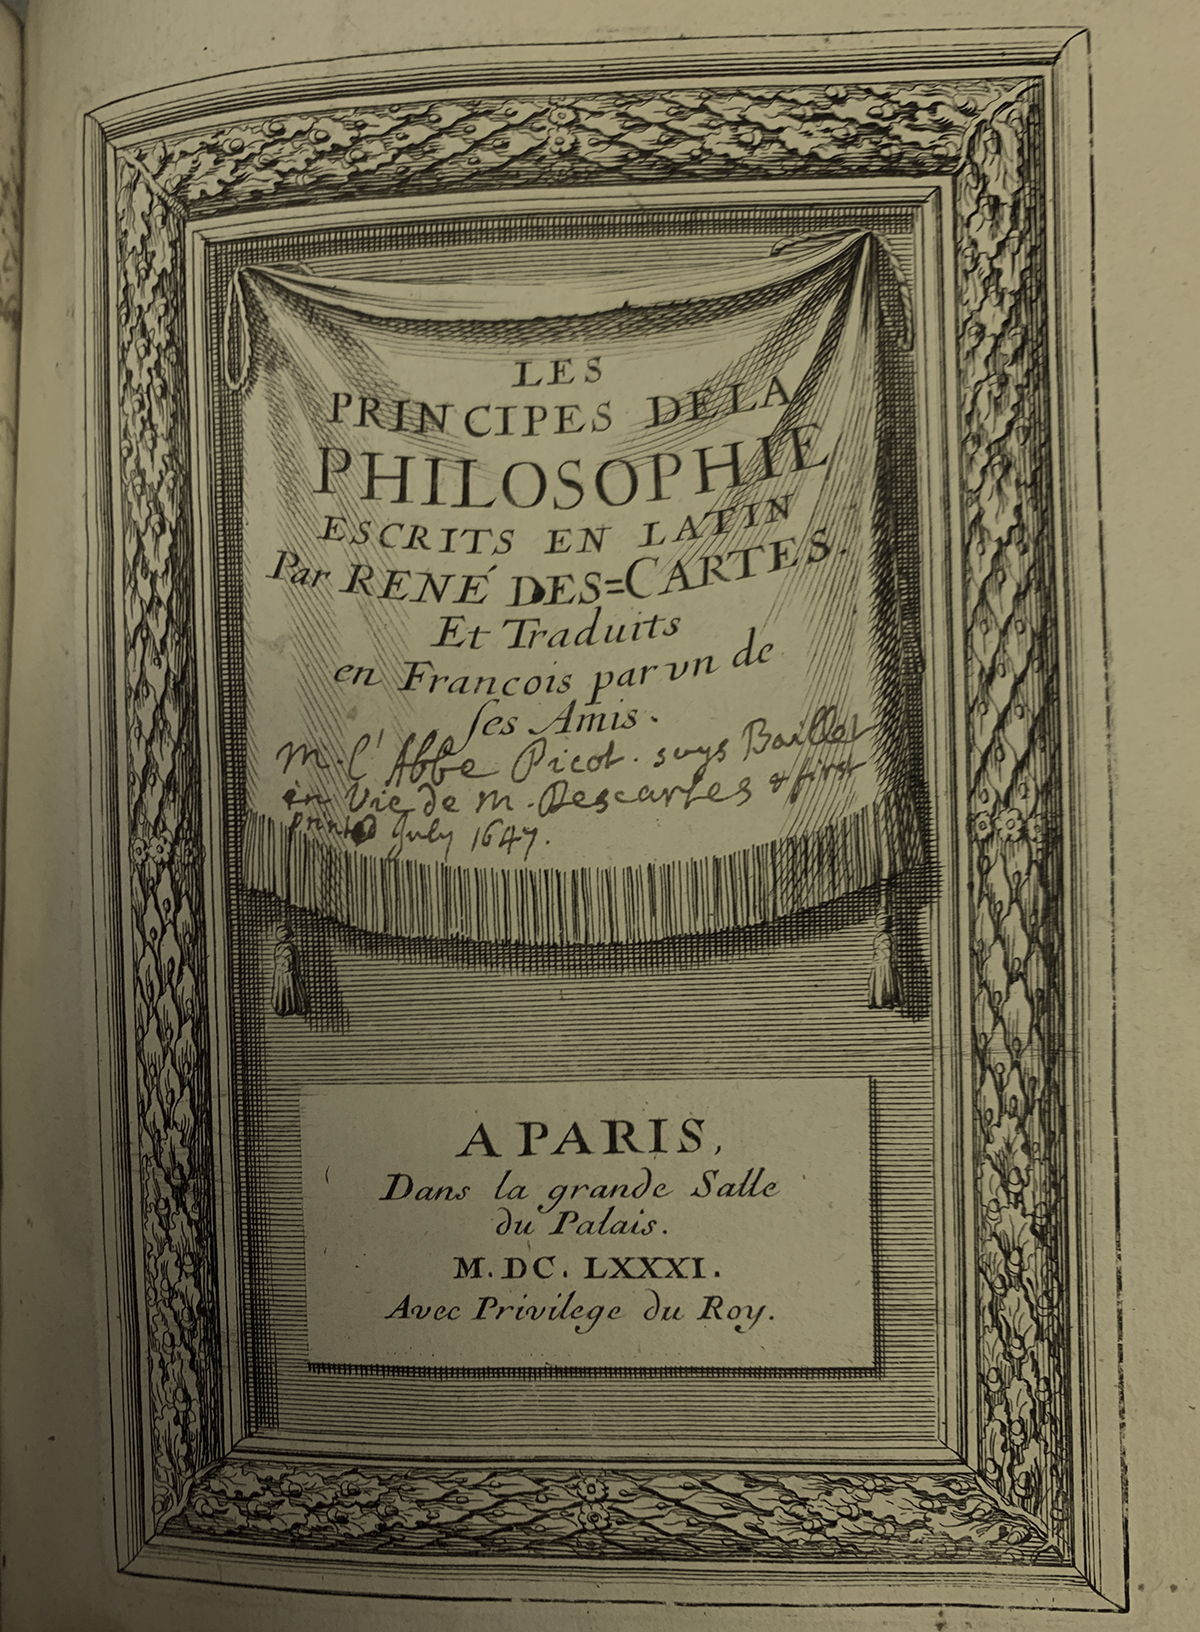 Les Principes de la Philosophie by René Descartes